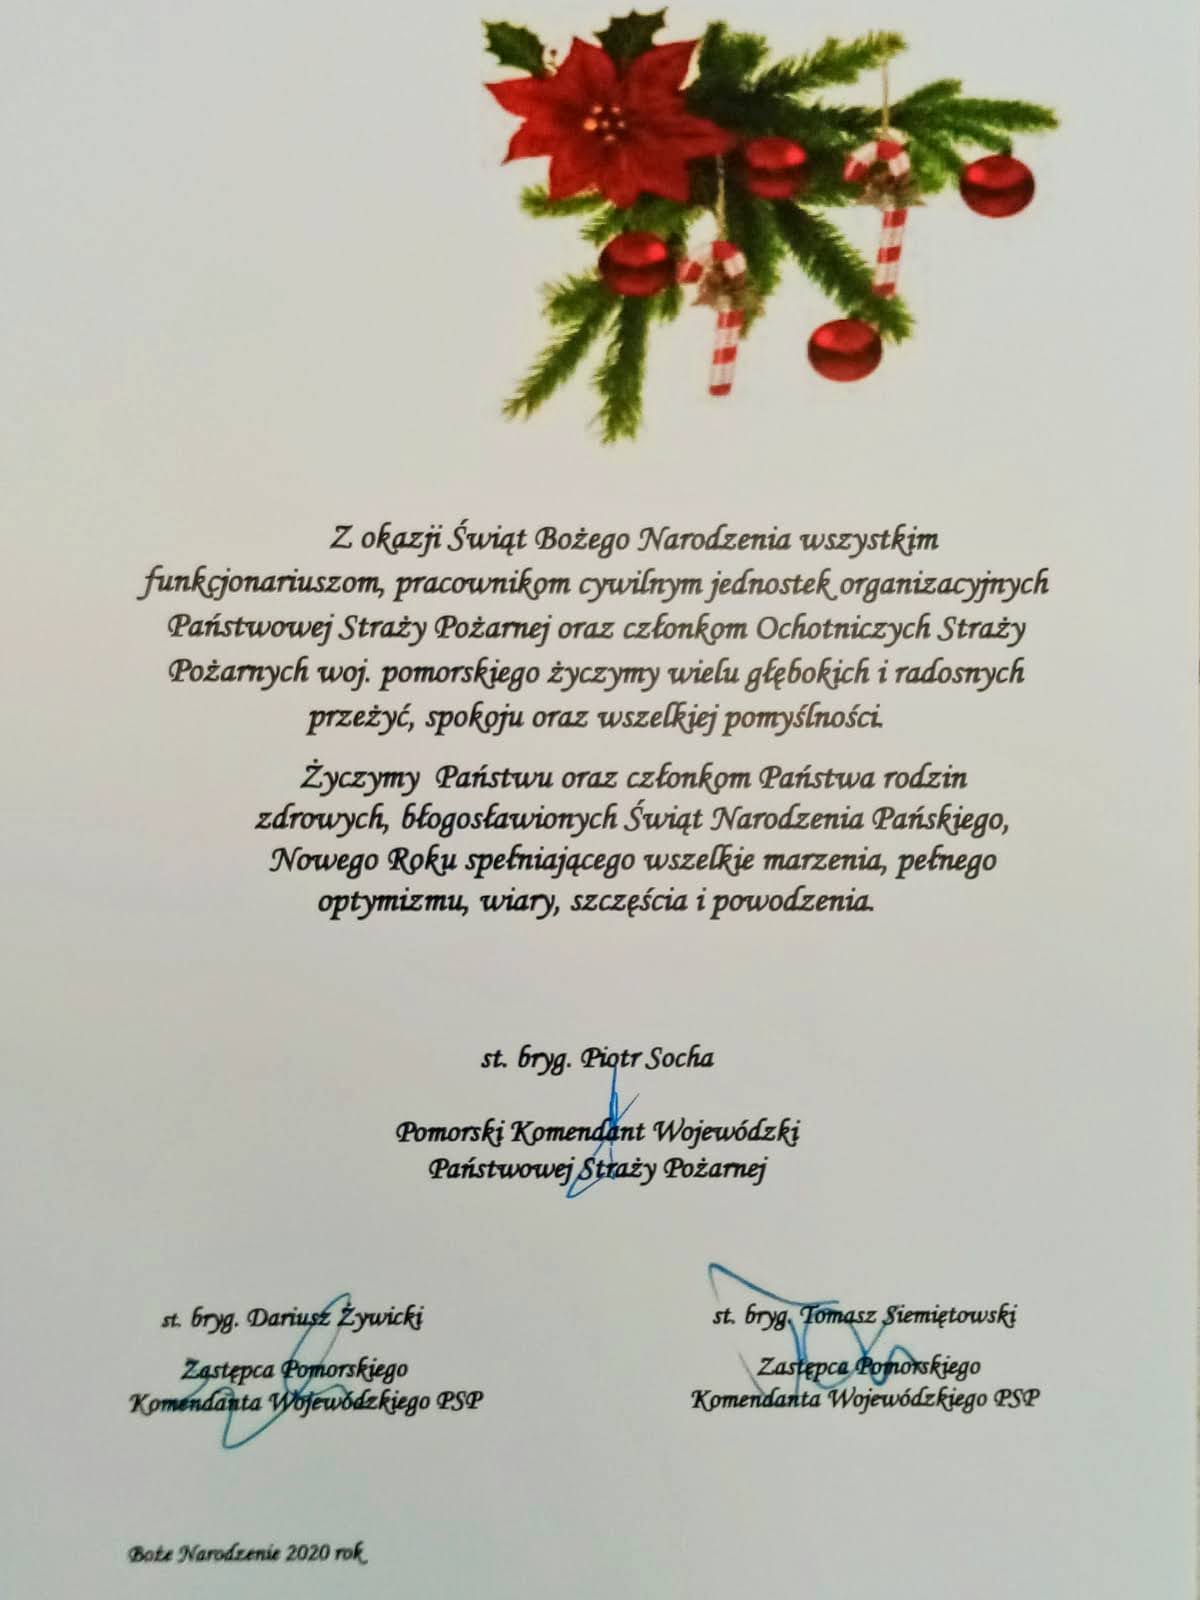 Życzenia Świąteczno-Noworoczne Kierownictwa KW PSP.